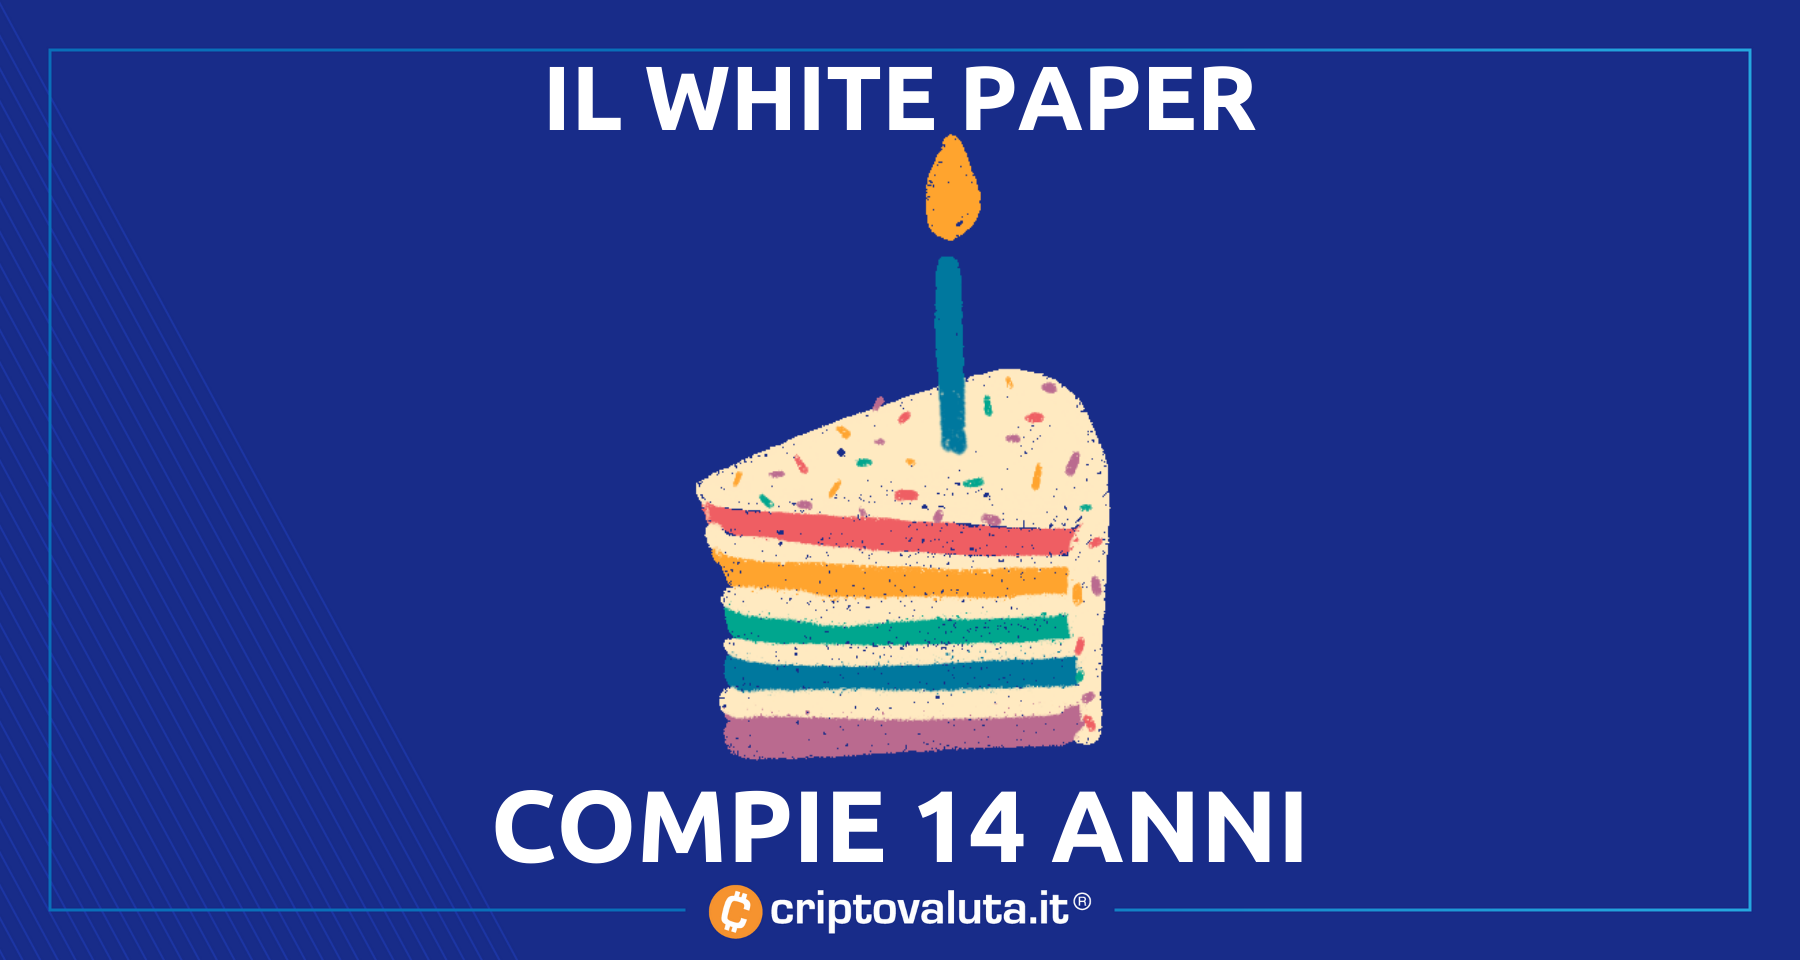 Bitcoin: Il white paper compie 14 anni | Tutto ebbe inizio il…